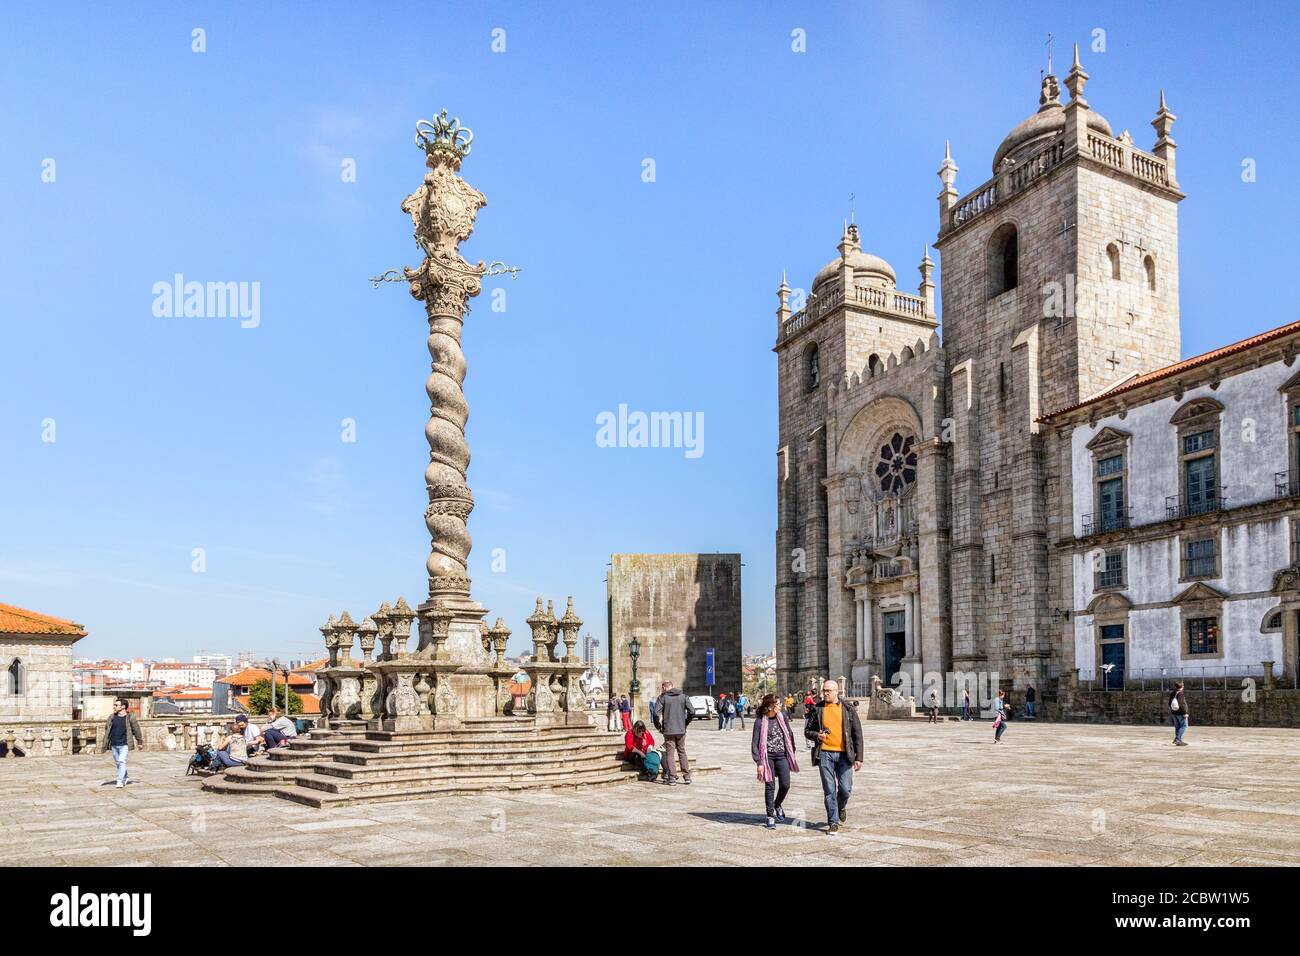 10 marzo 2020: Porto, Portogallo - il Pelourinho o pilastro di Porto, che si trova nella piazza all'estremità ovest della Cattedrale. Foto Stock